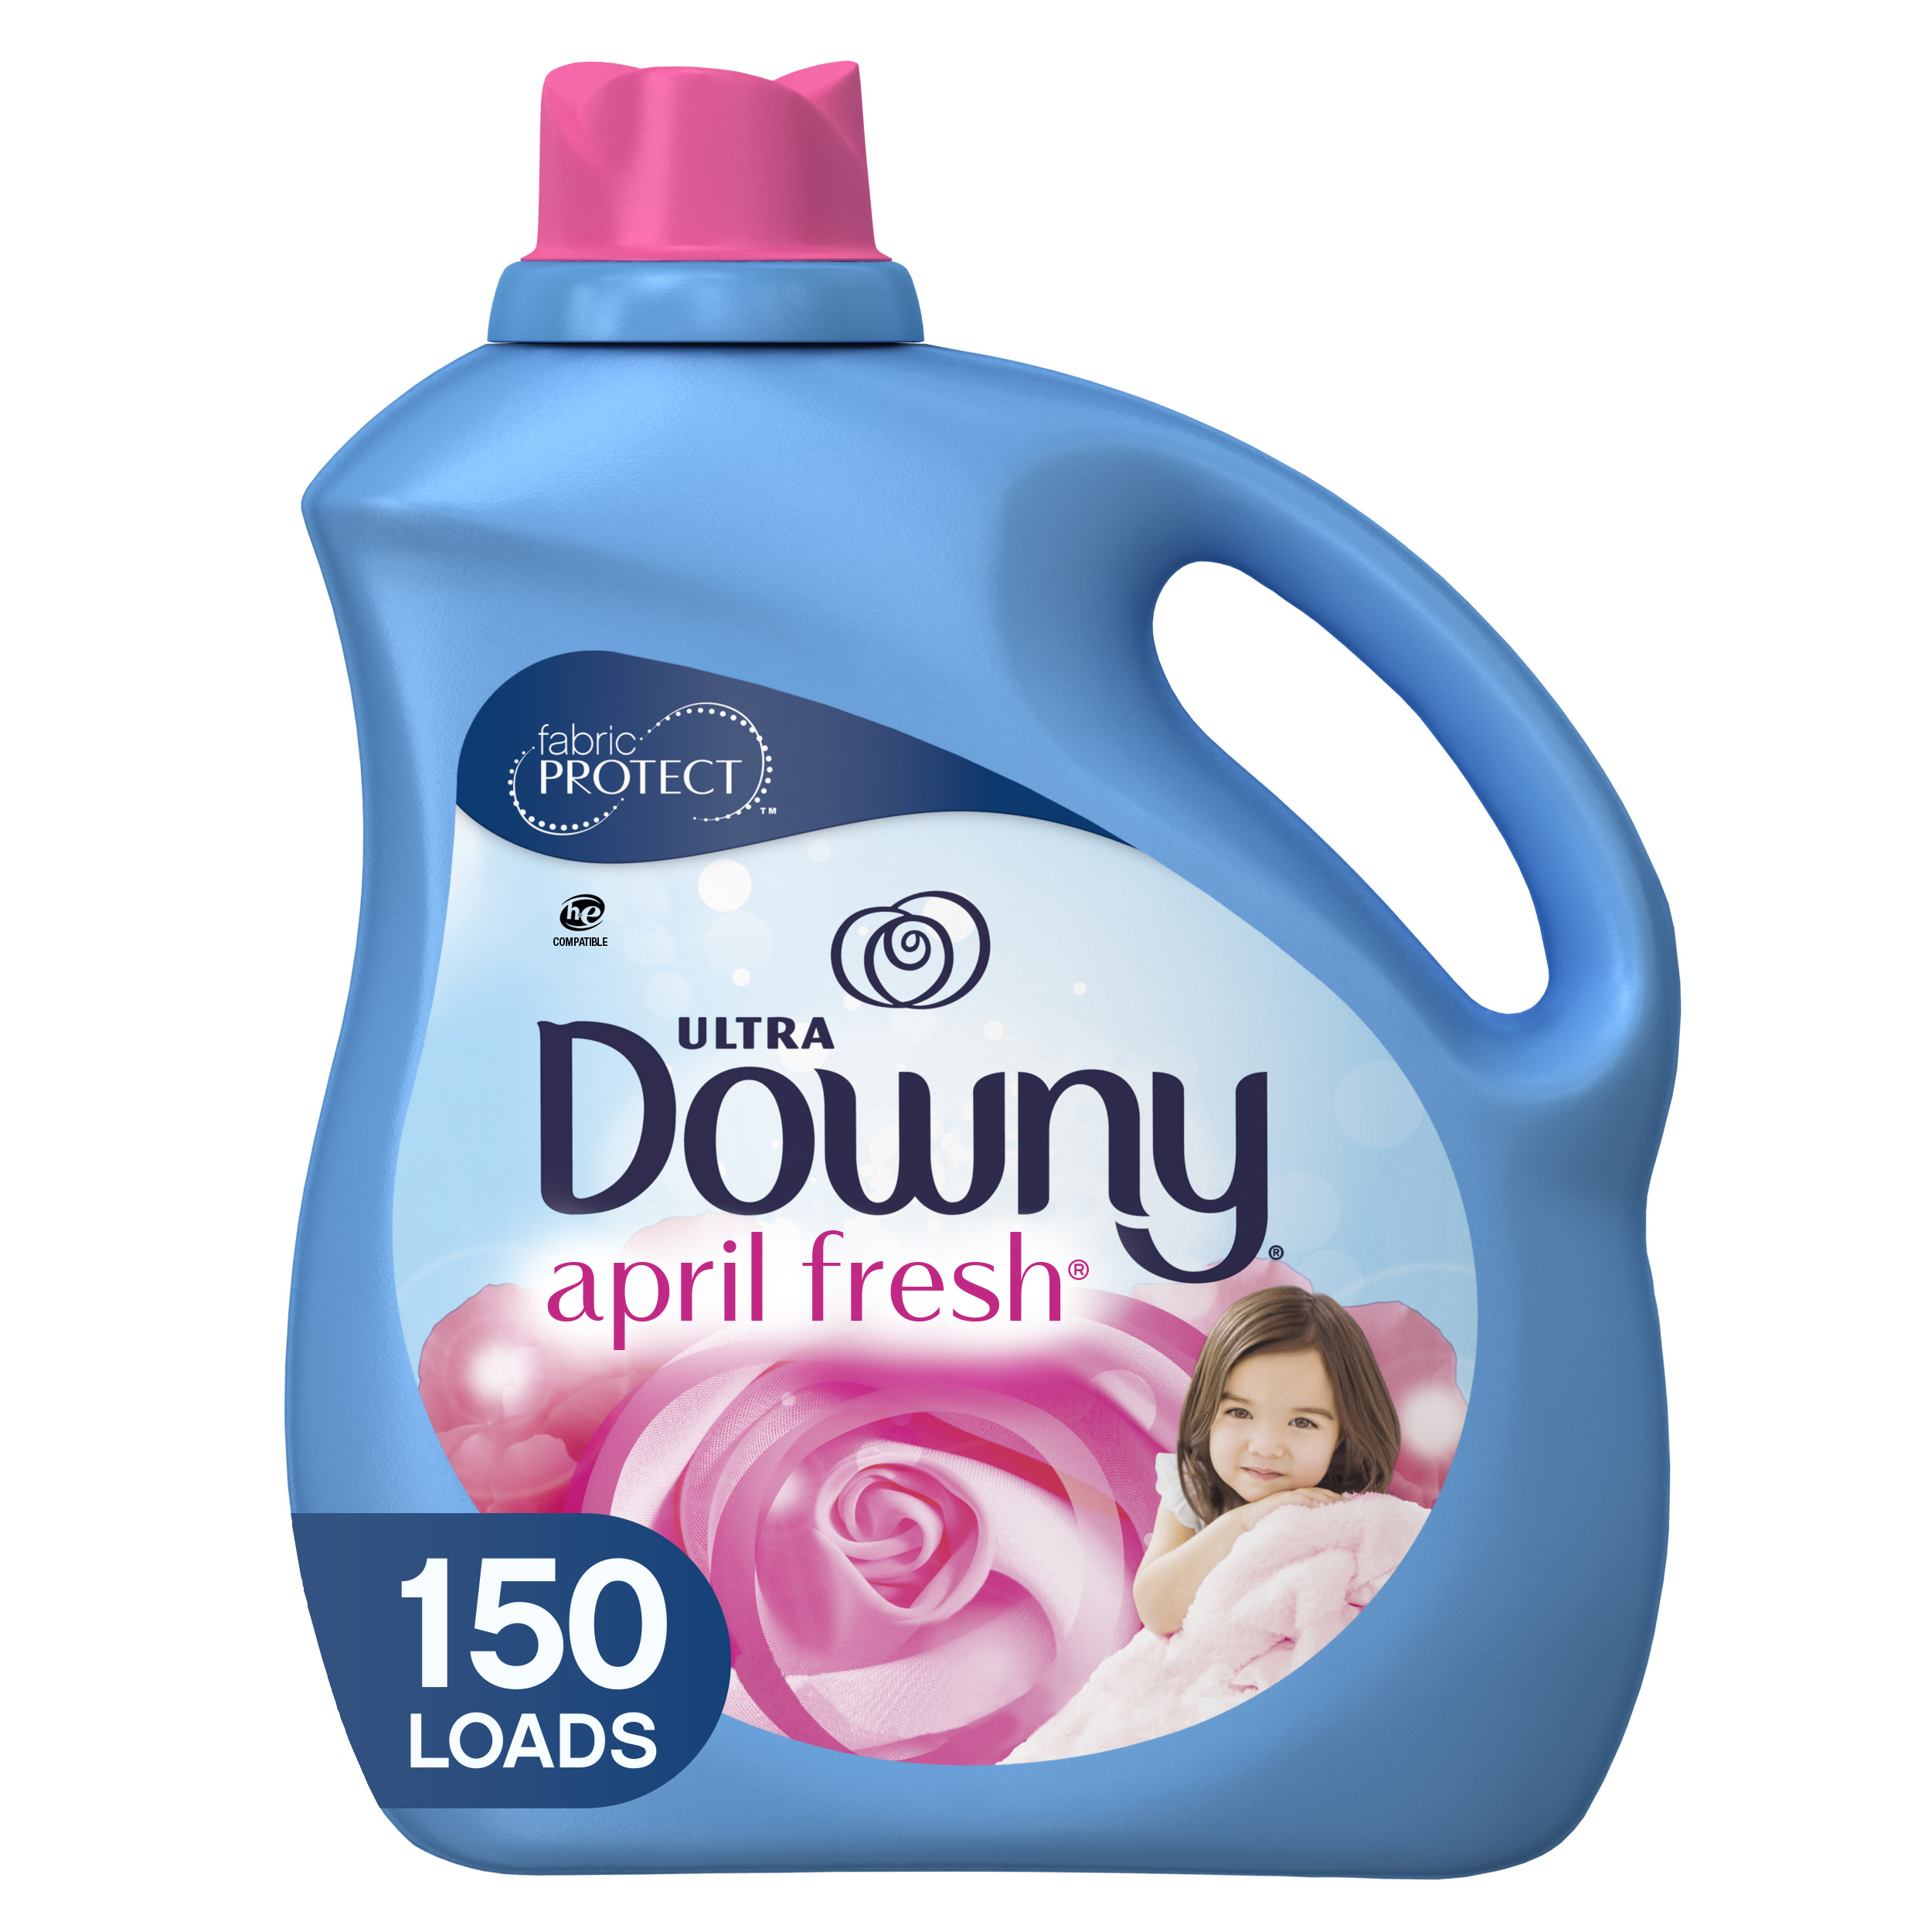 Downy April Fresh, 150 Loads Liquid Fabric Softener, 129 fl oz - image 1 of 8